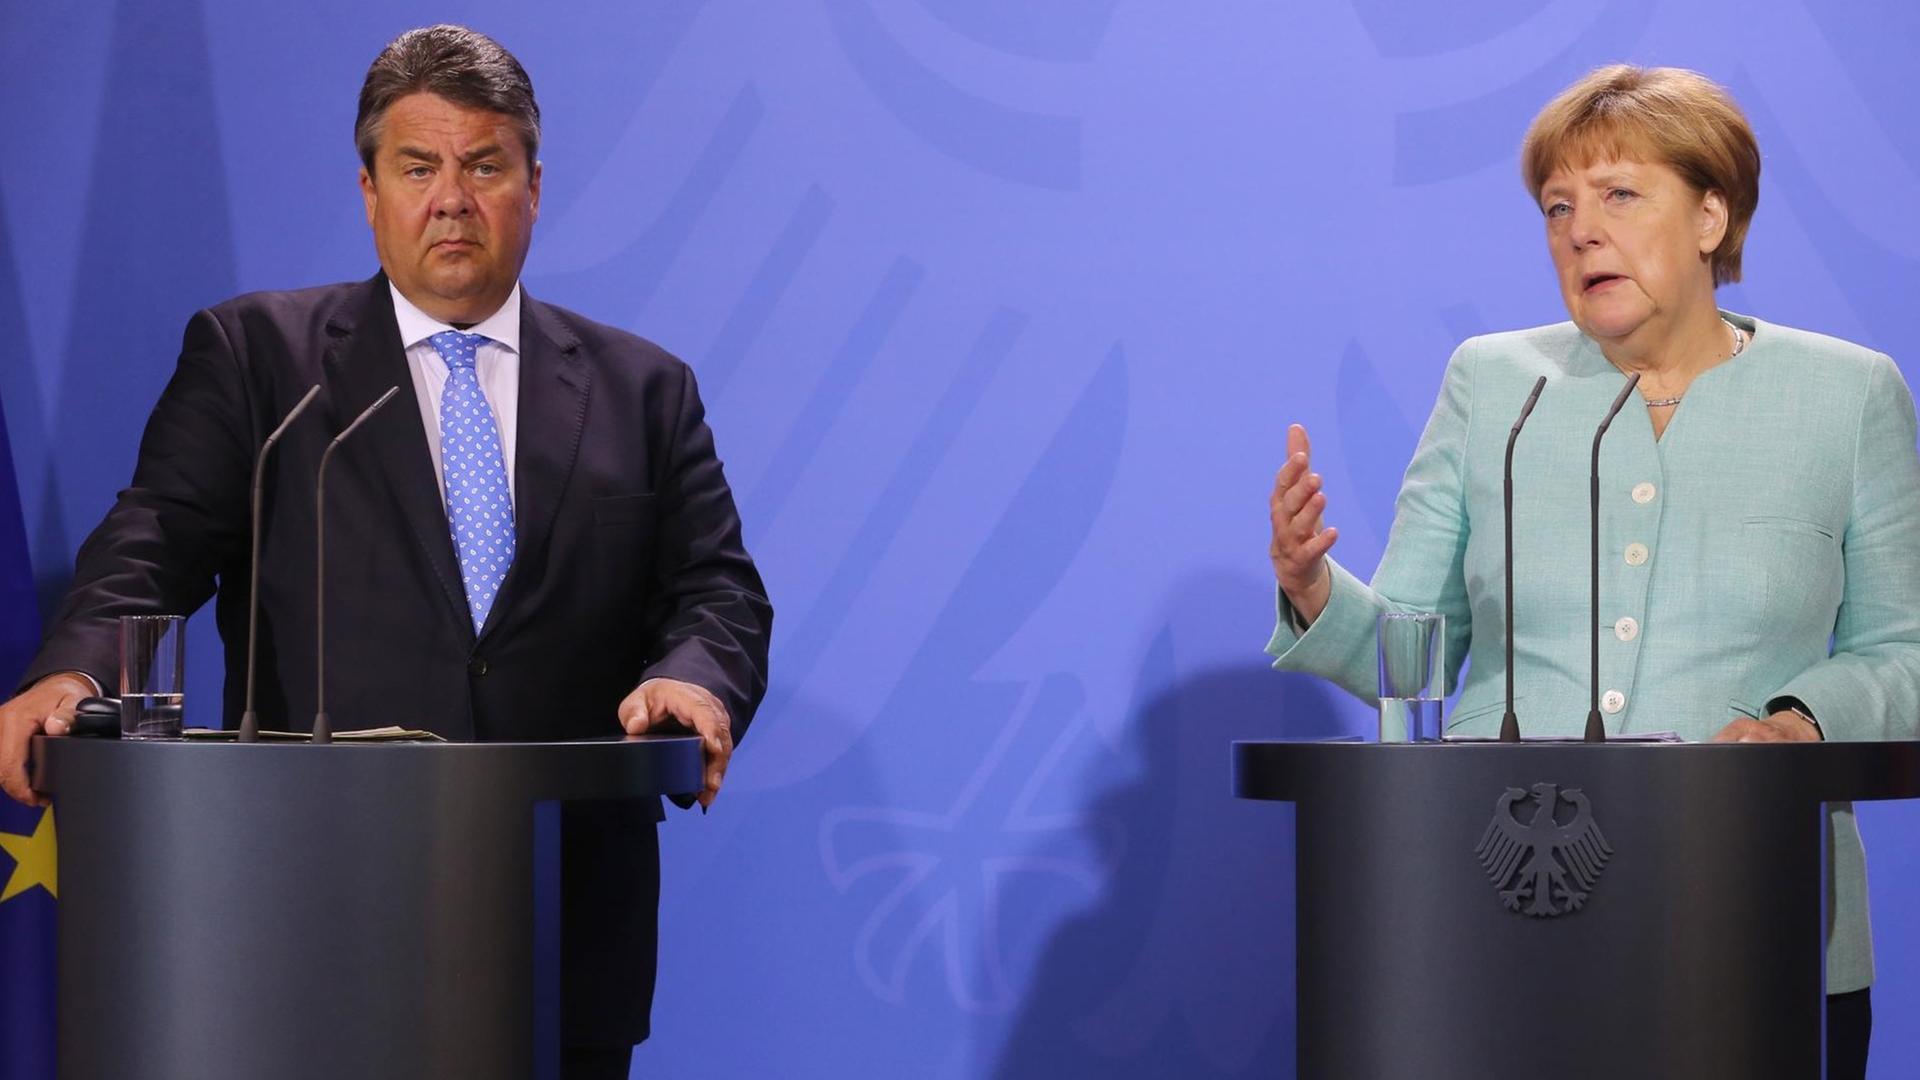 Bundeskanzlerin Angela Merkel (CDU) und SPD-Chef Sigmar Gabriel nach der Kabinettsklausur in Meseberg